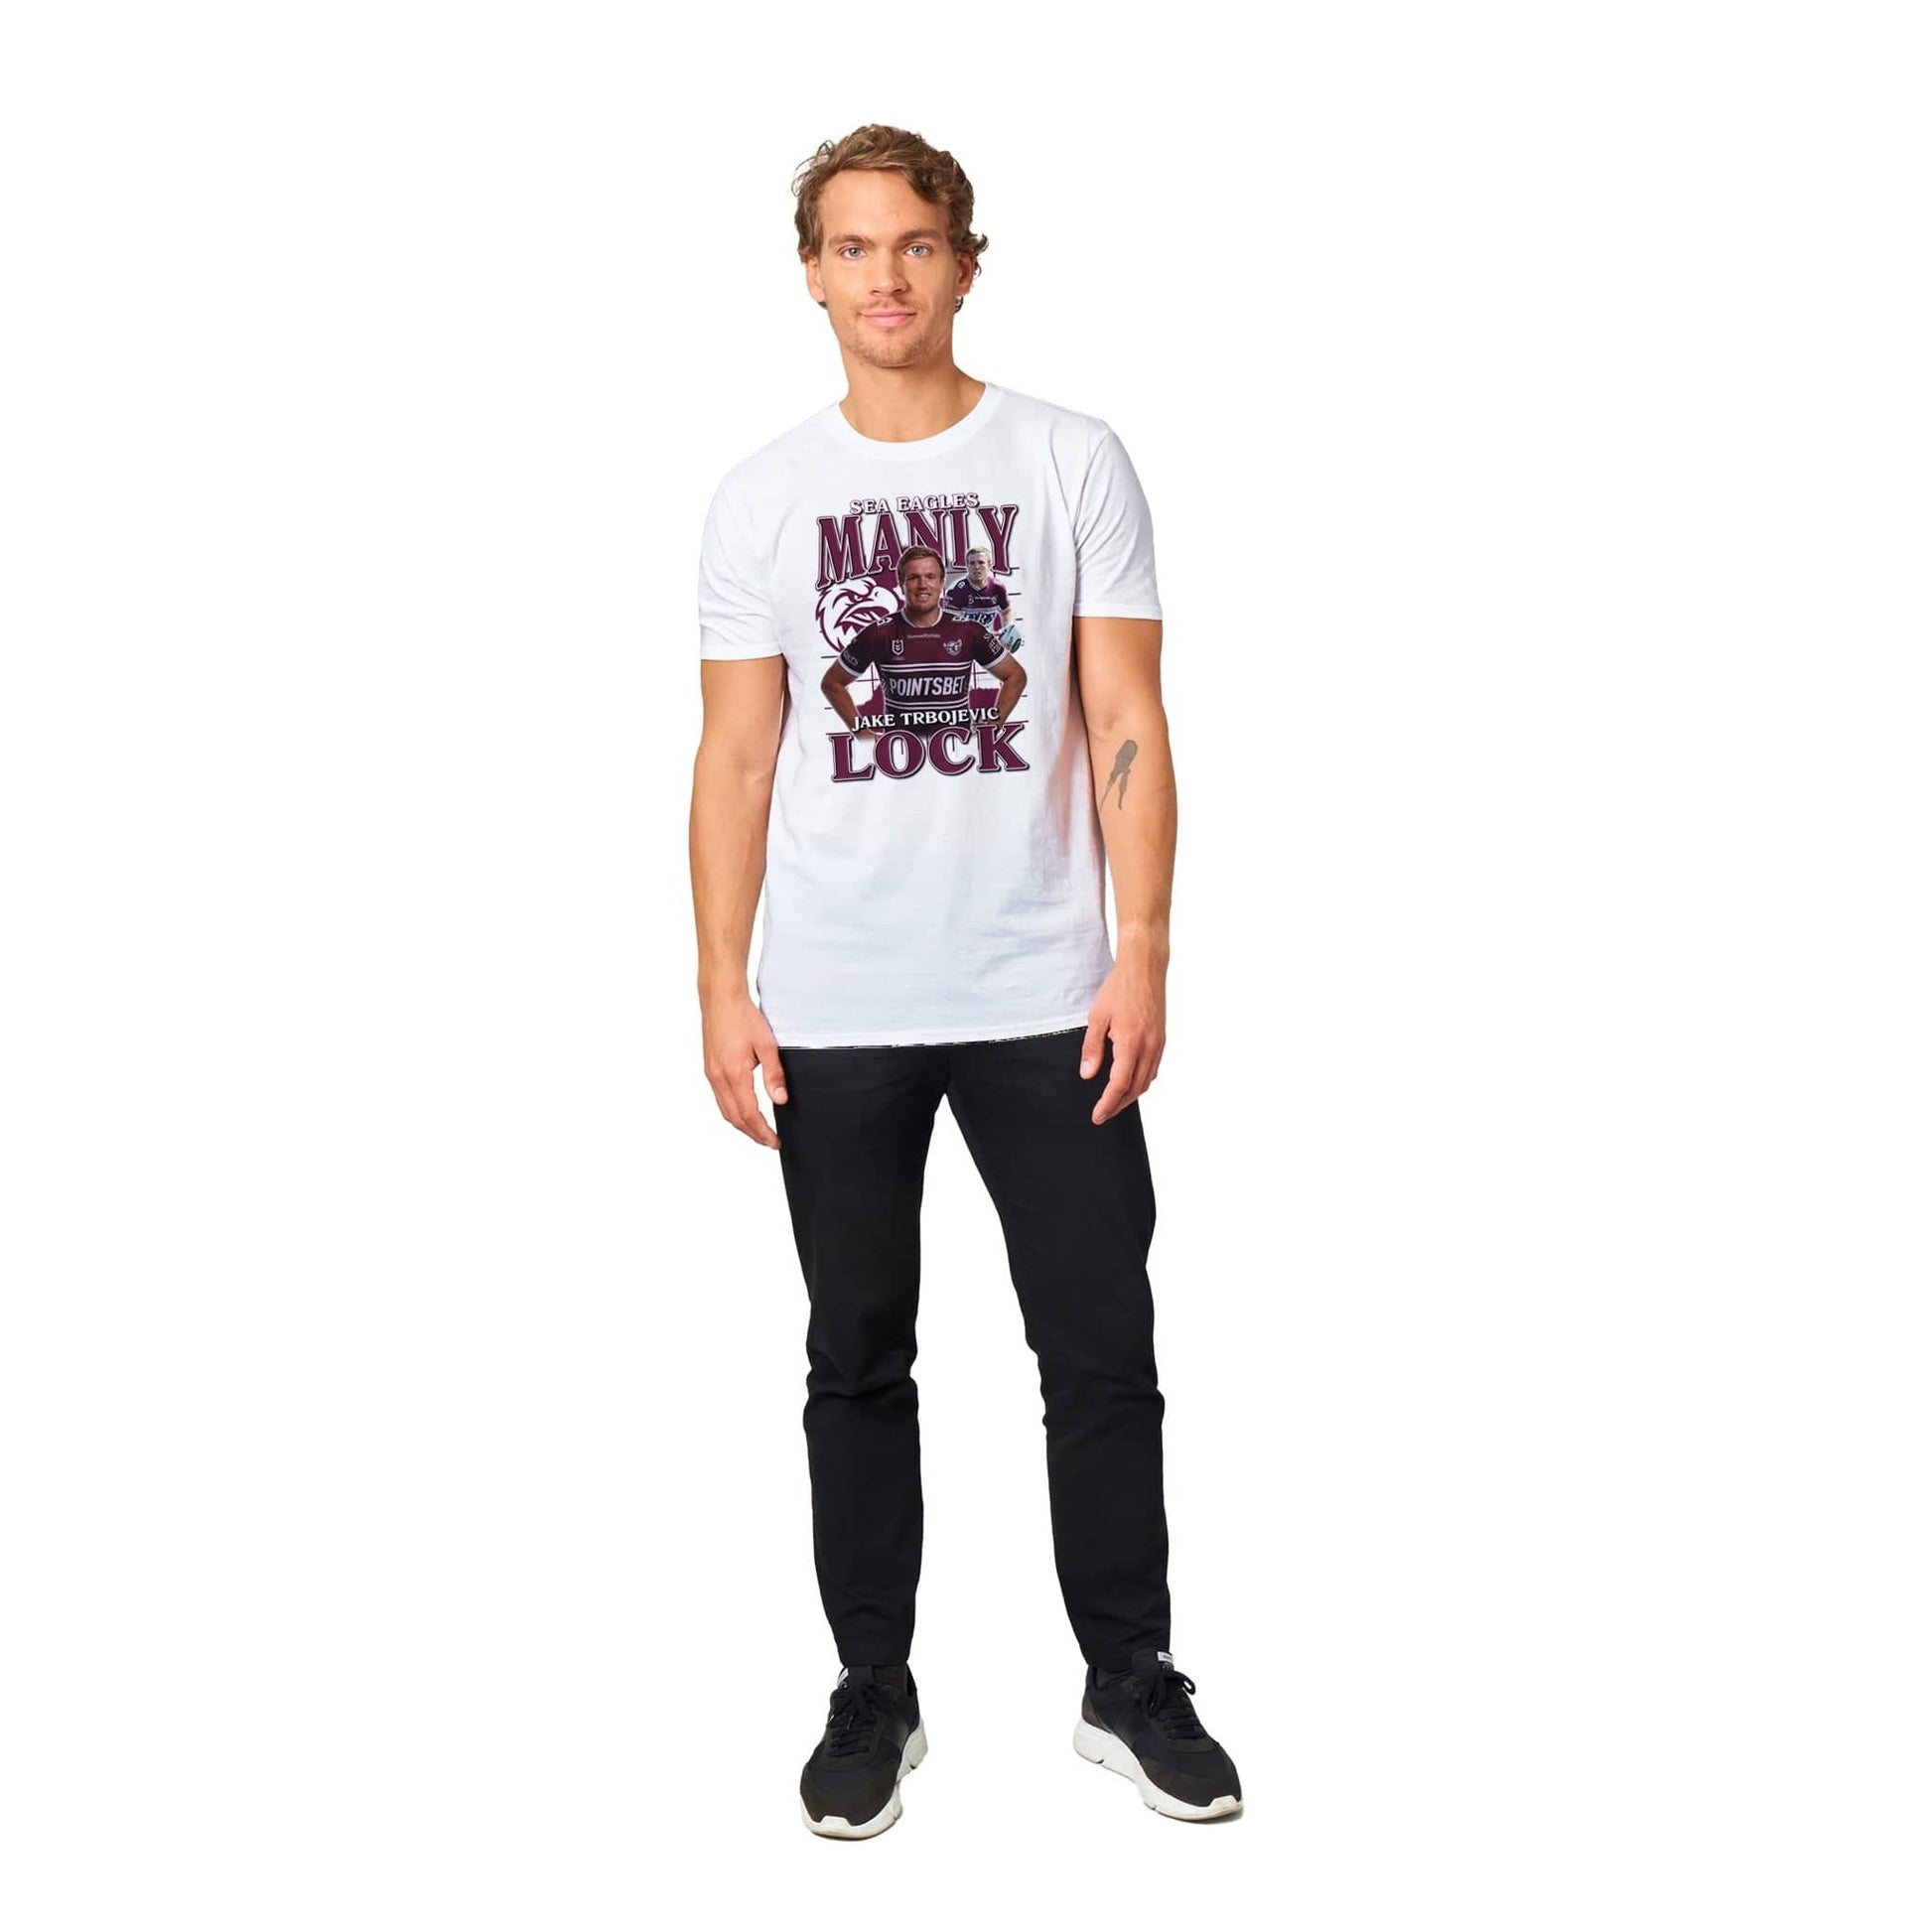 Jake Trbojevic T-shirt Australia Online Color